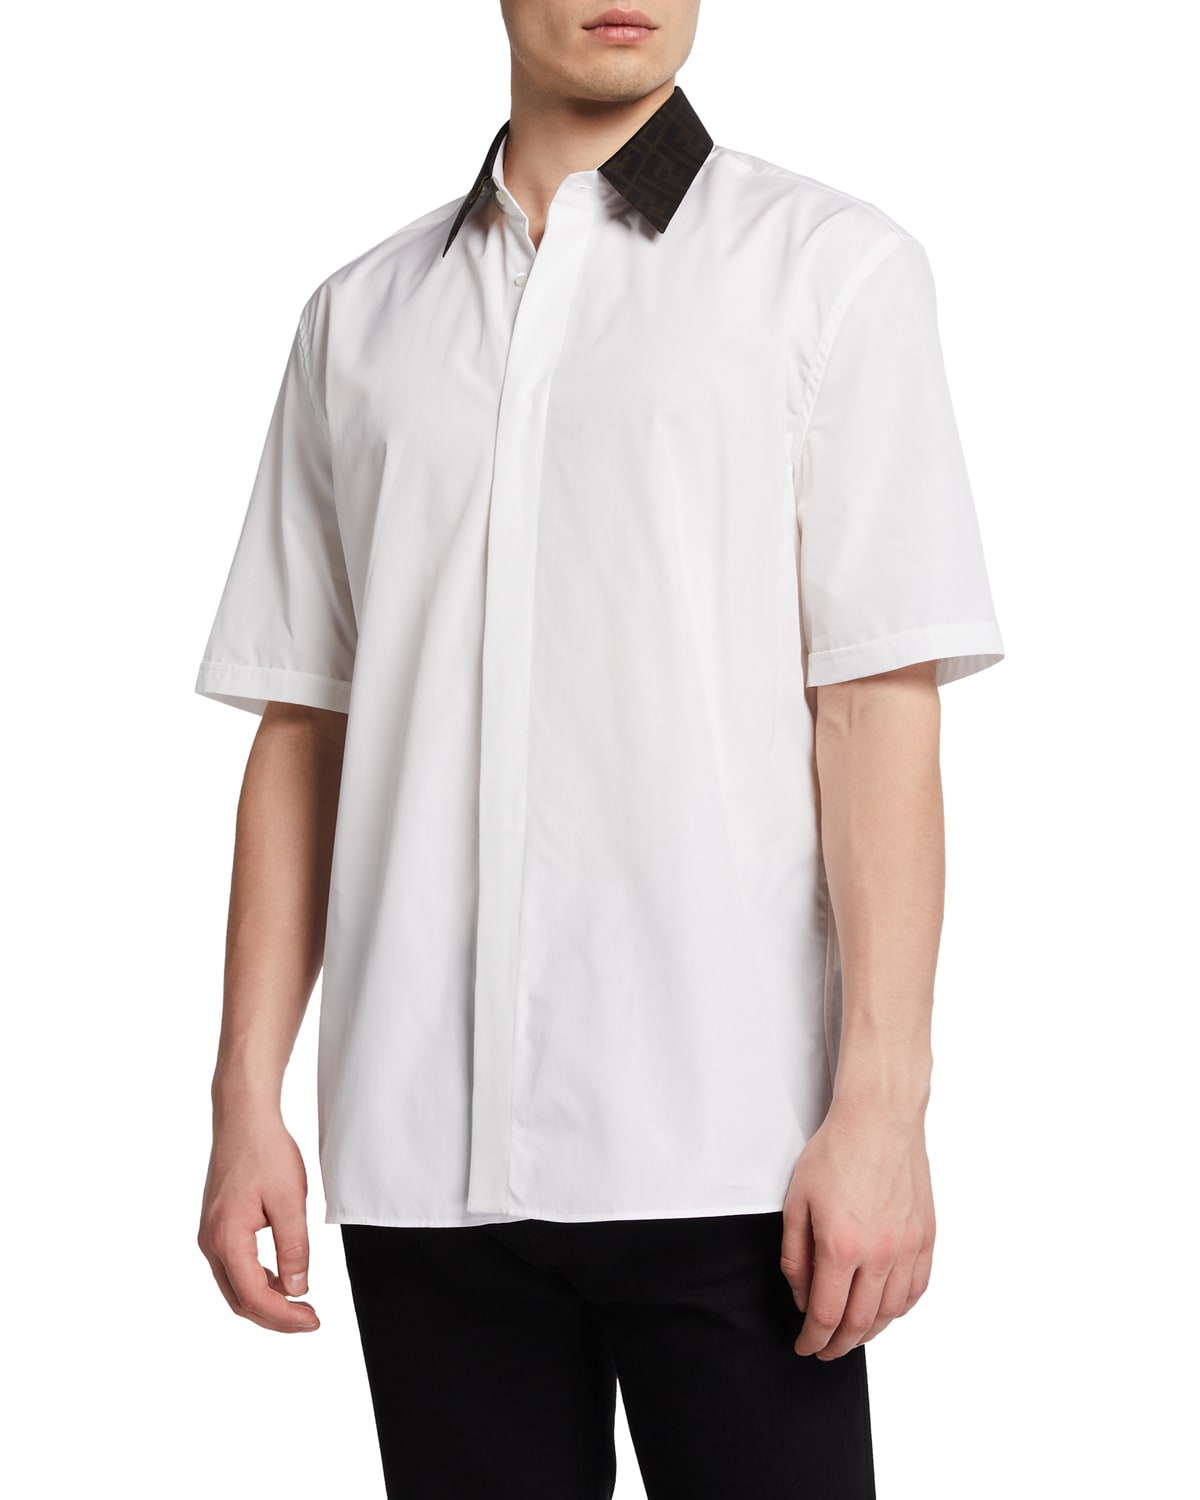 Men's FF-Collar Dress Shirt